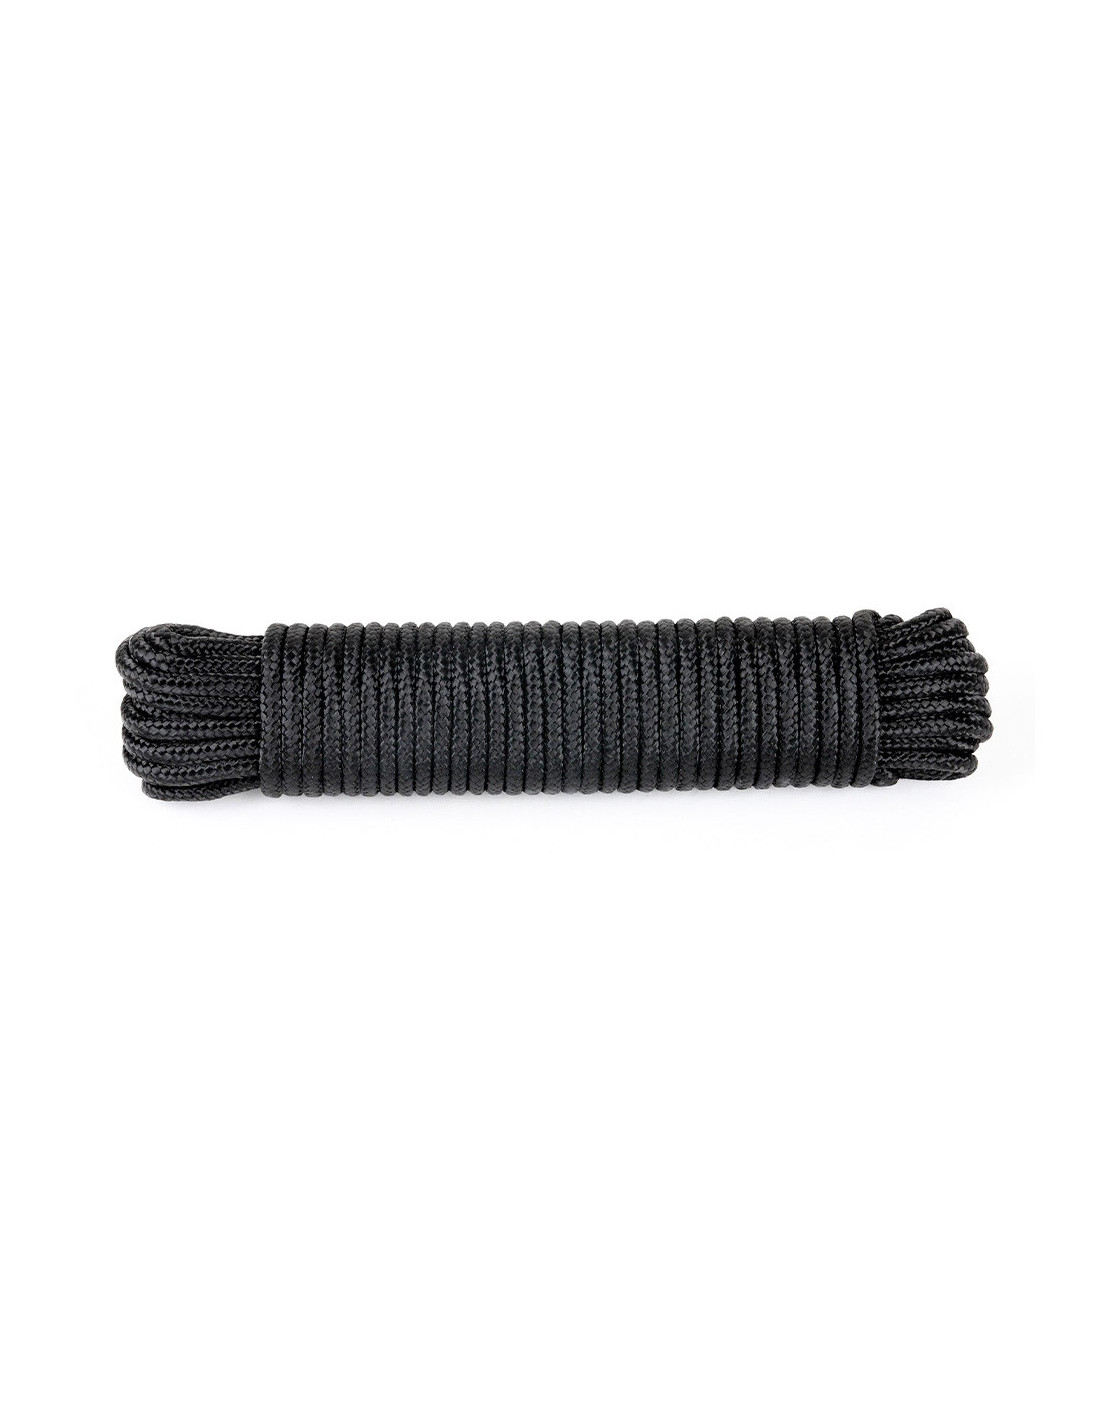 Drisse corde Ø 7 mm - longueur 15 m Noir